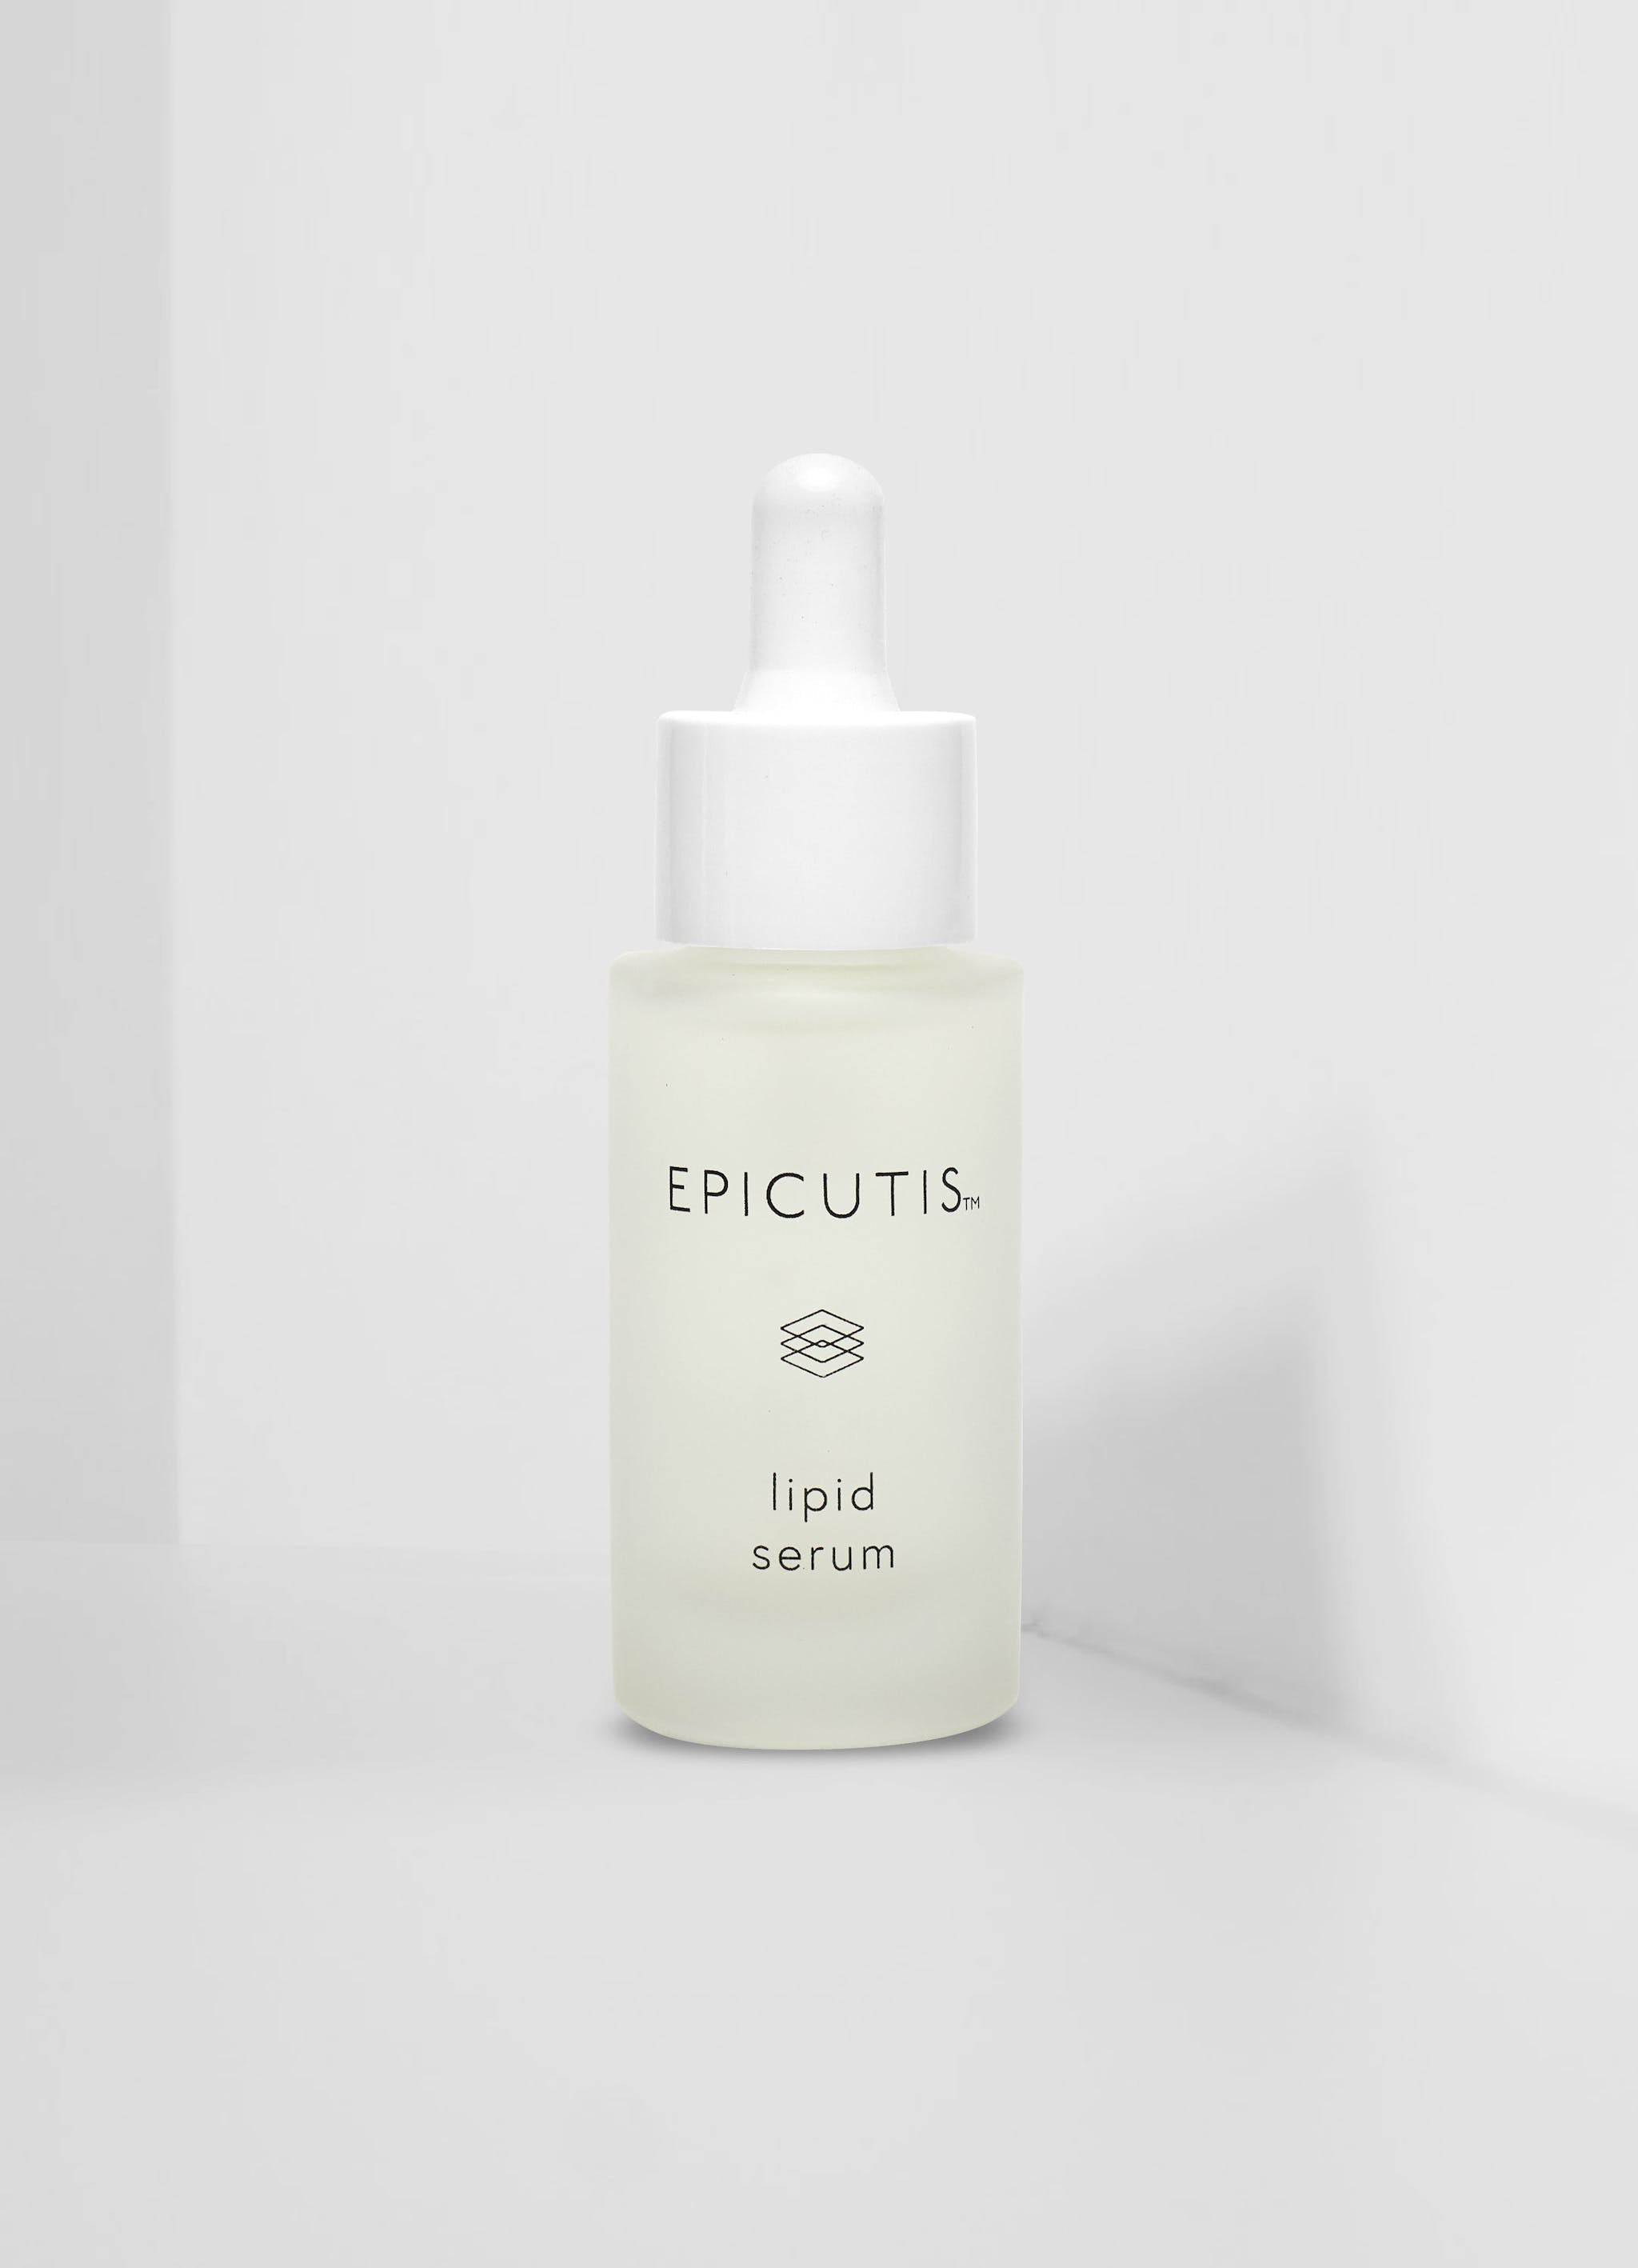 Luxury Skincare Set Epicutis Official Stockist. Worldwide shipping. Medical-grade skincare. The M-ethod Aesthetics